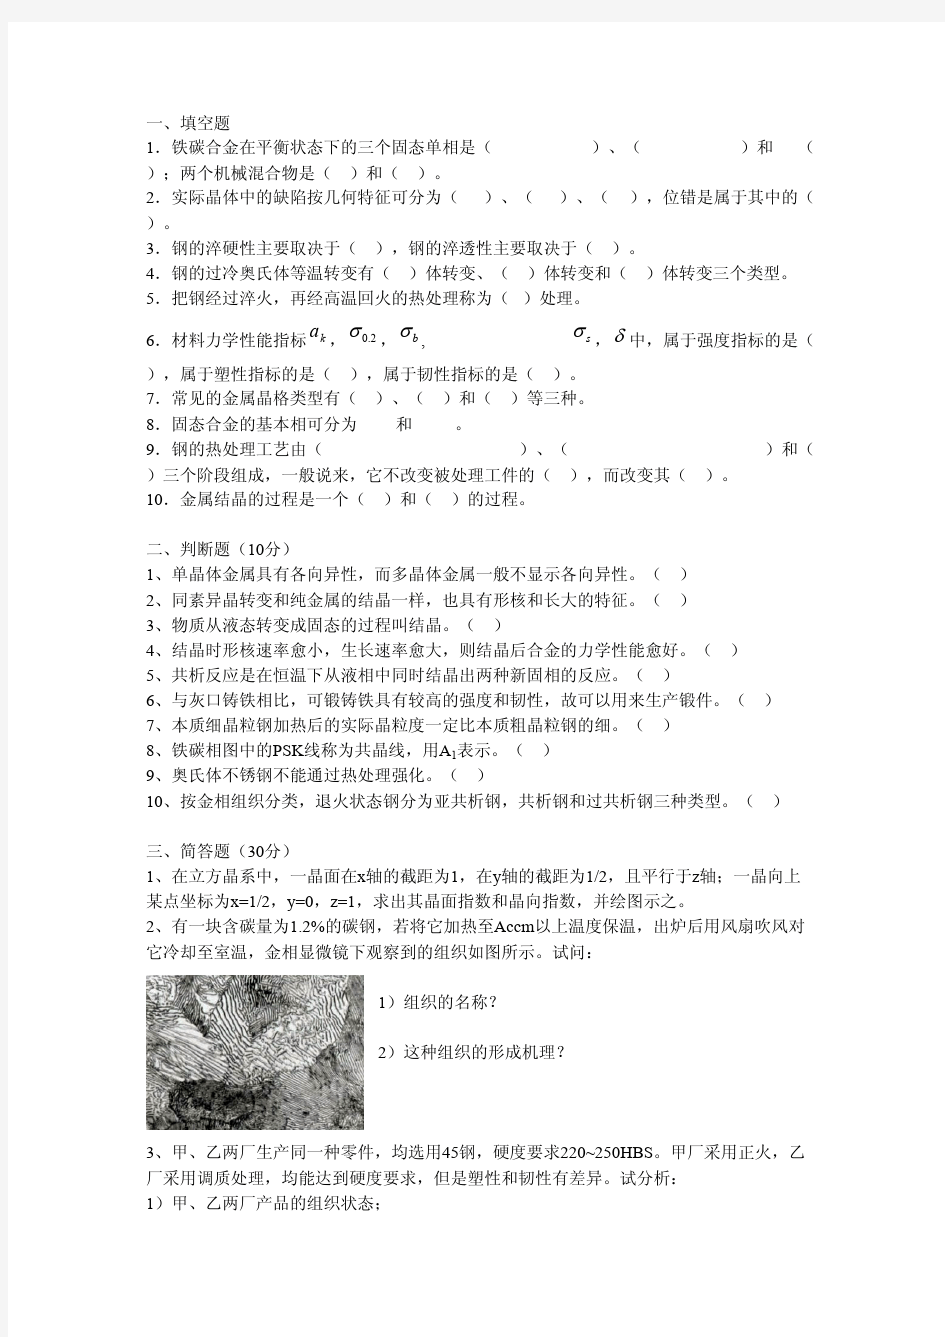 工程材料,测试题武汉理工大学,考试试题(含原题),2014年